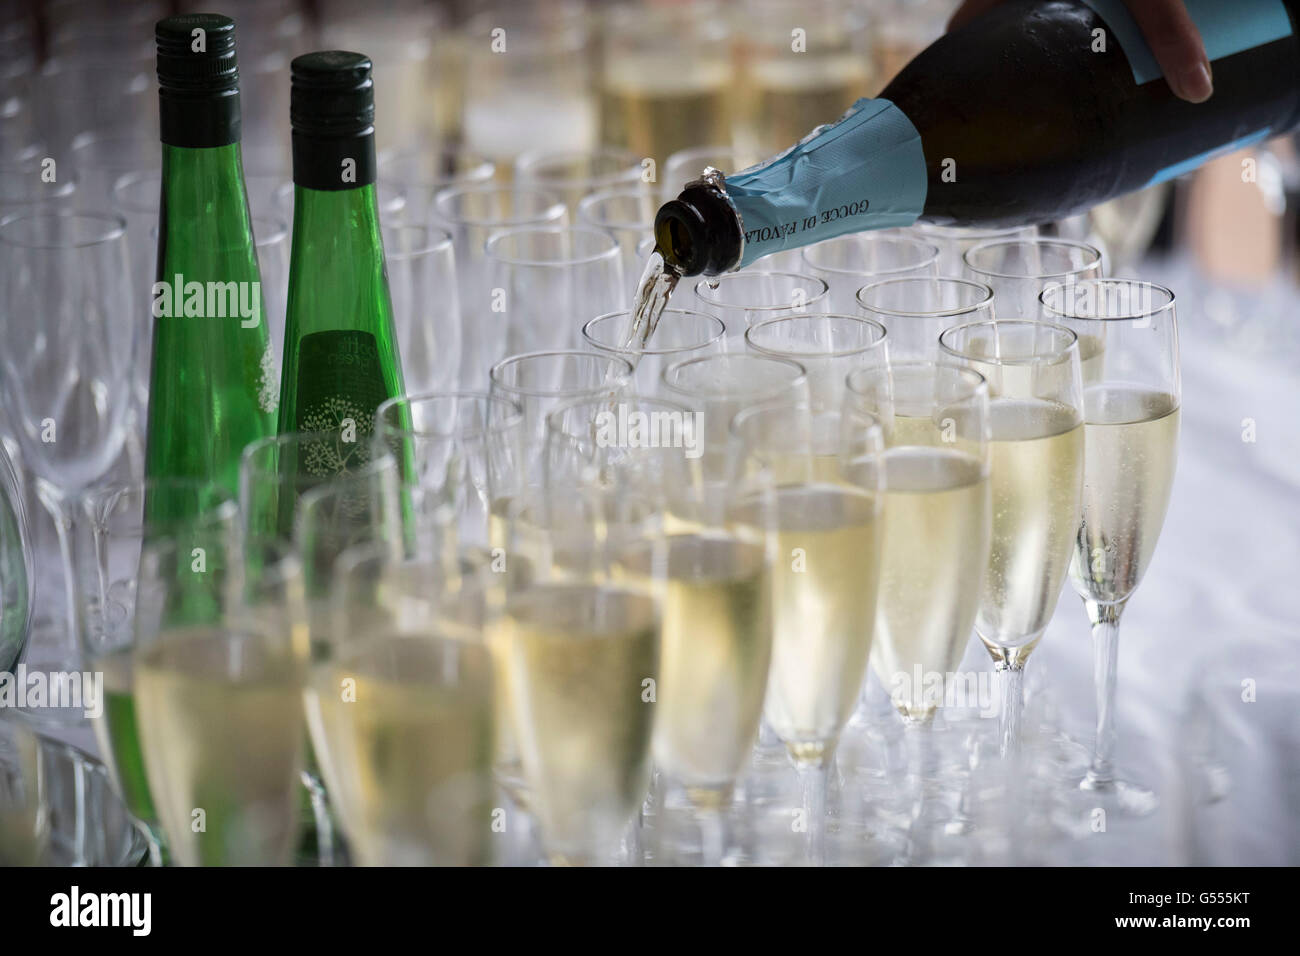 Champagne servi dans des verres d'une bouteille lors d'une réception au champagne. Banque D'Images